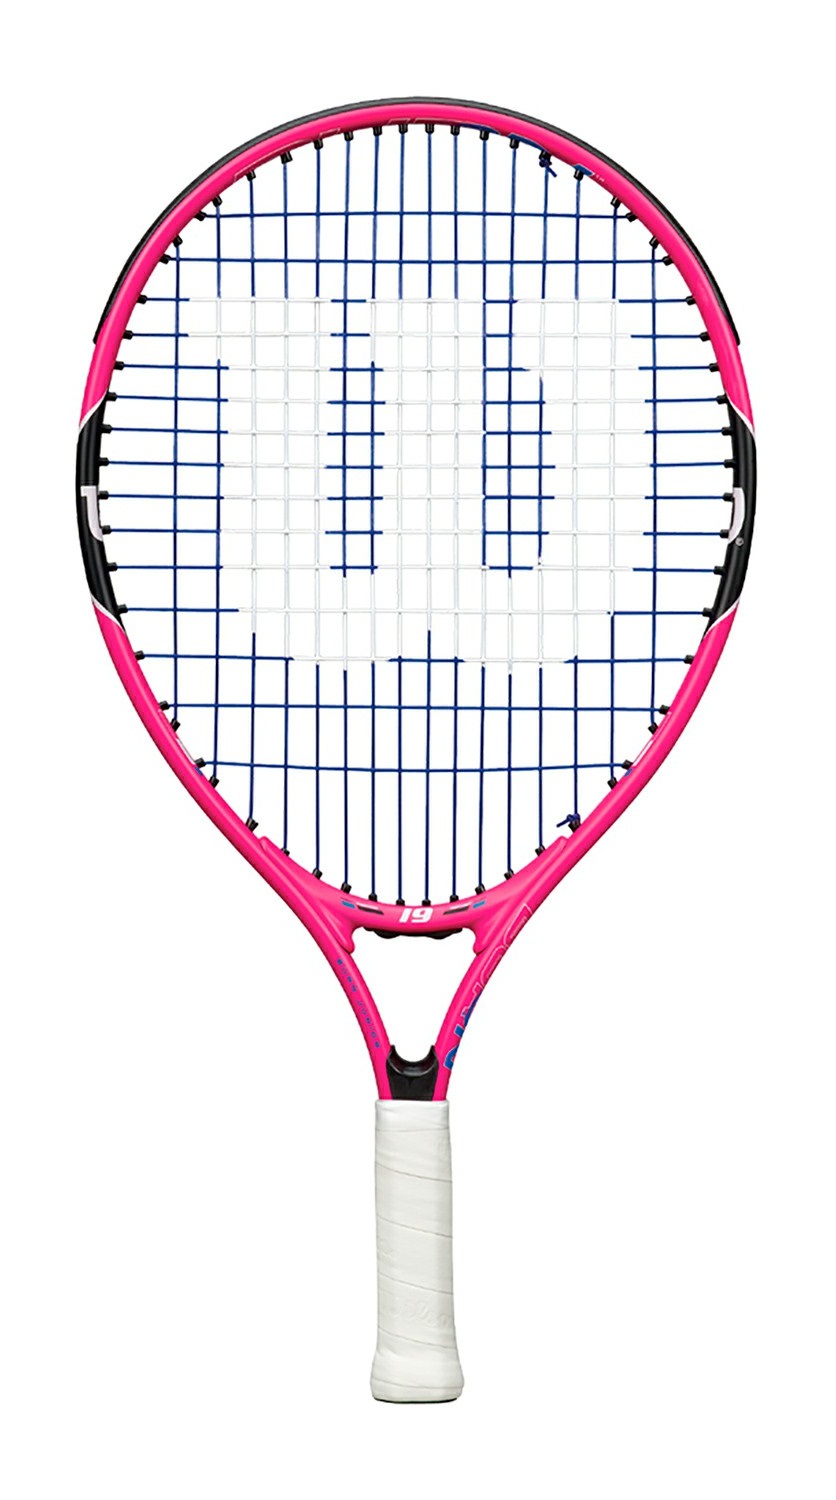 Wilson Burn Jr 19,
Esta raqueta ligera y manejable, es una excelente opción para los pequeños que inician con edad entre 2 y 4 años.
Precio: $ 735. pesos